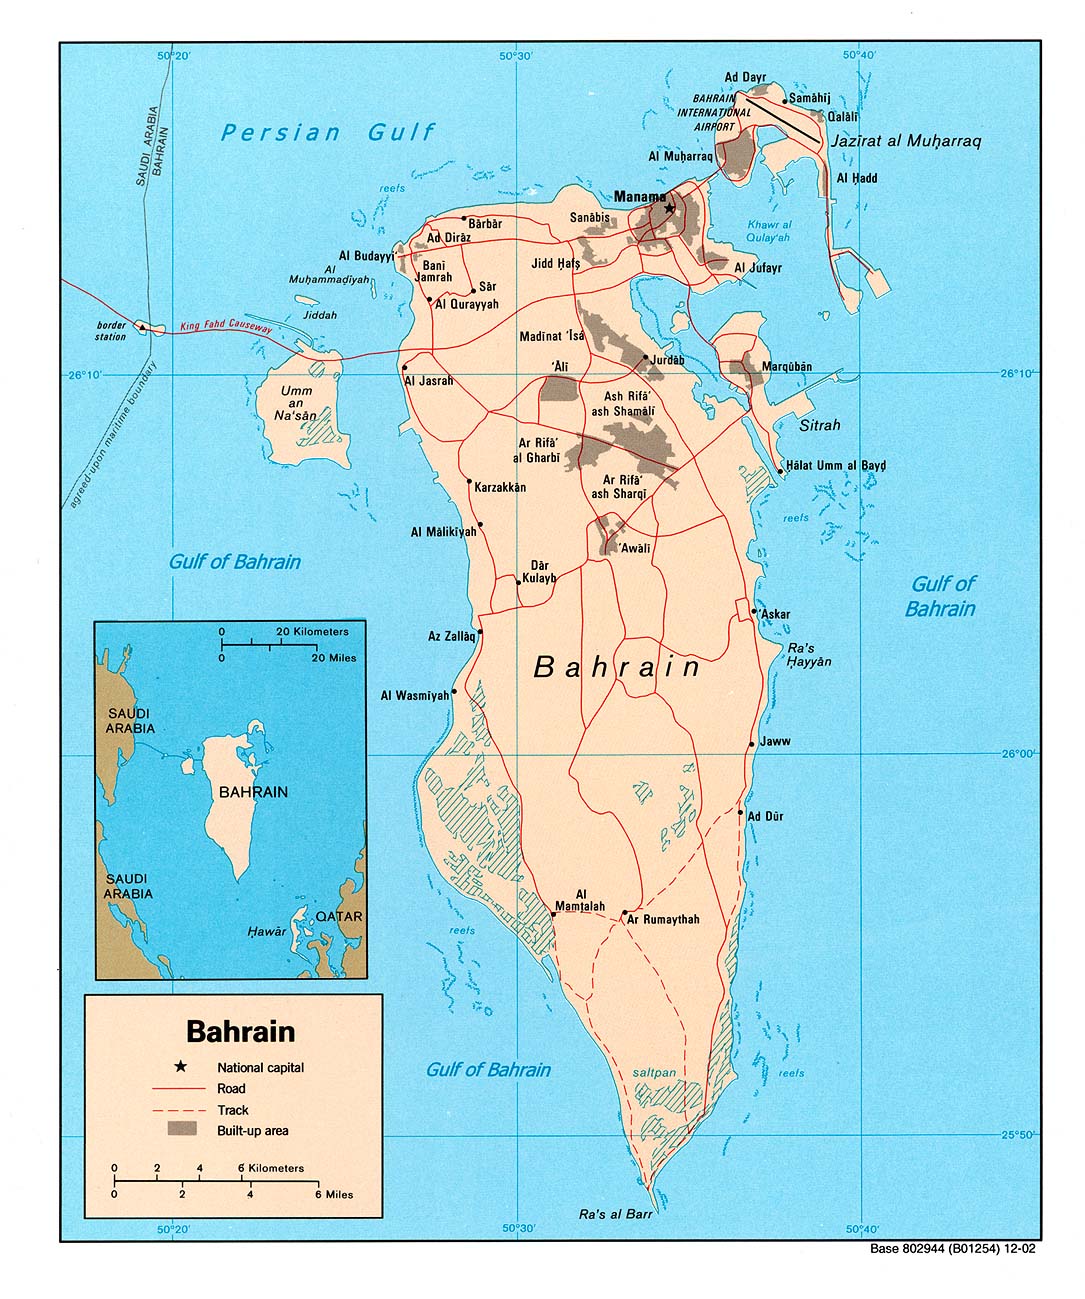 http://www.populationdata.net/images/cartes/asie/proche-orient/bahrein/bahrein.jpg